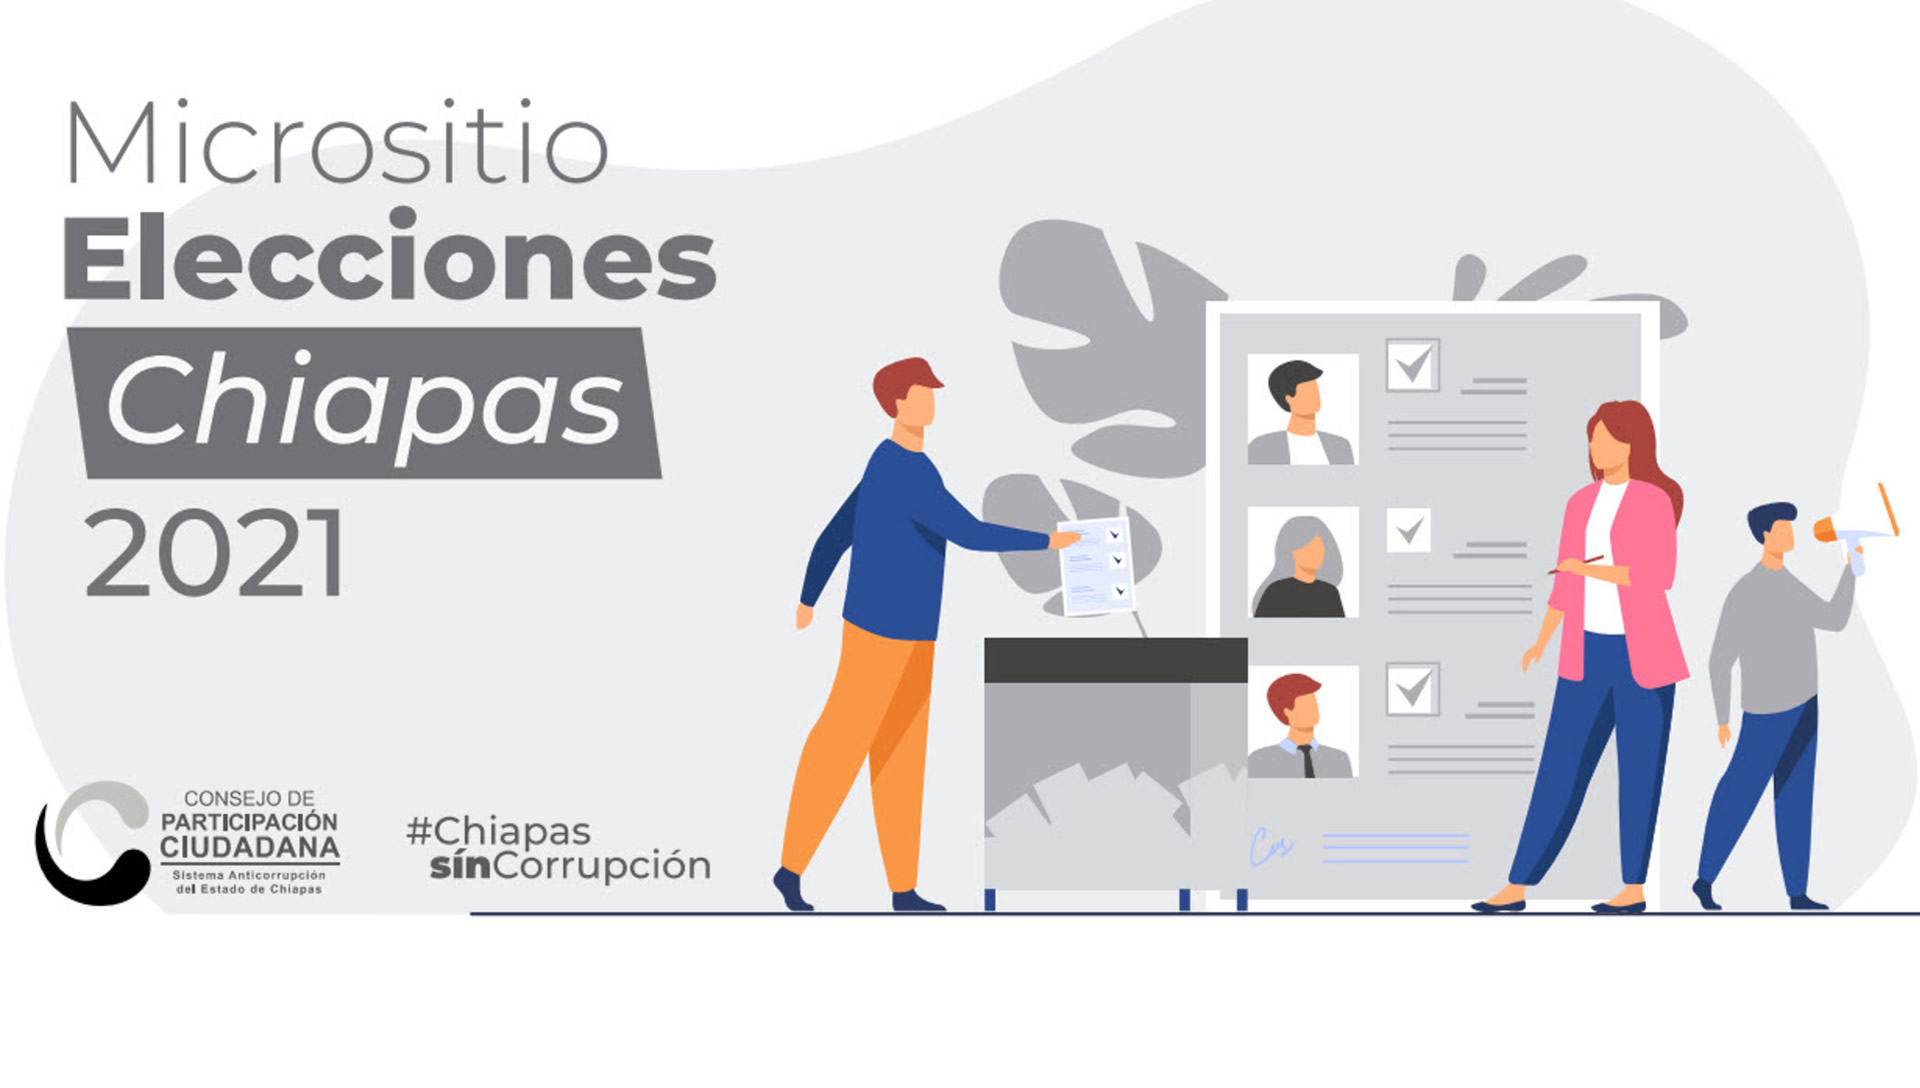 Micrositio de Elecciones Extraordinarias Chiapas 2022